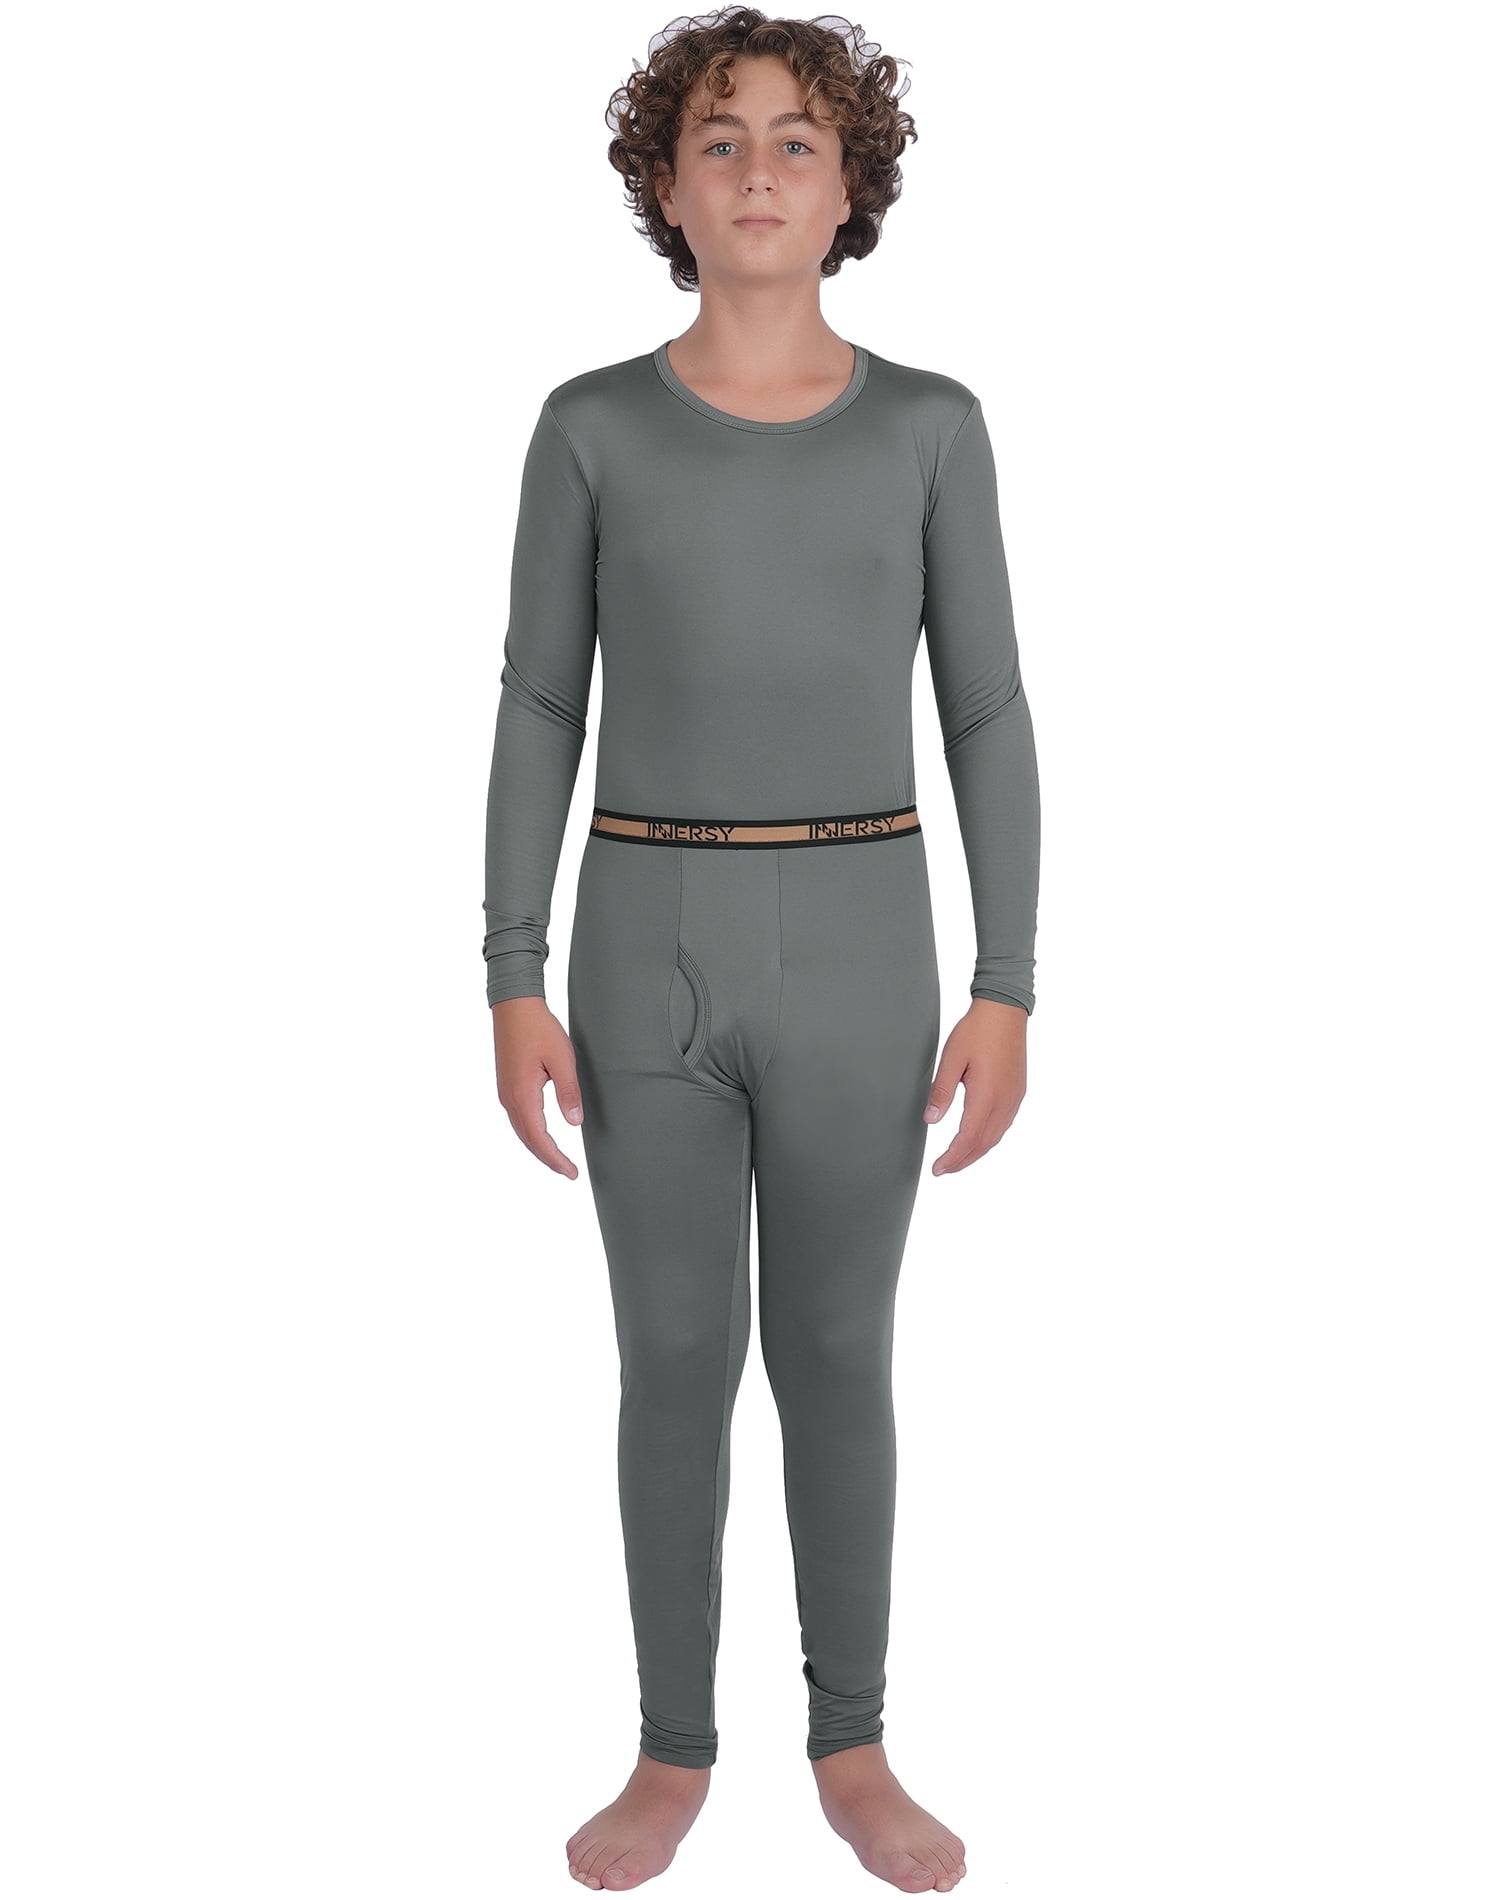 Thermajane Thermal Underwear for Girls Long John Set Kids (Pink, Medium) 